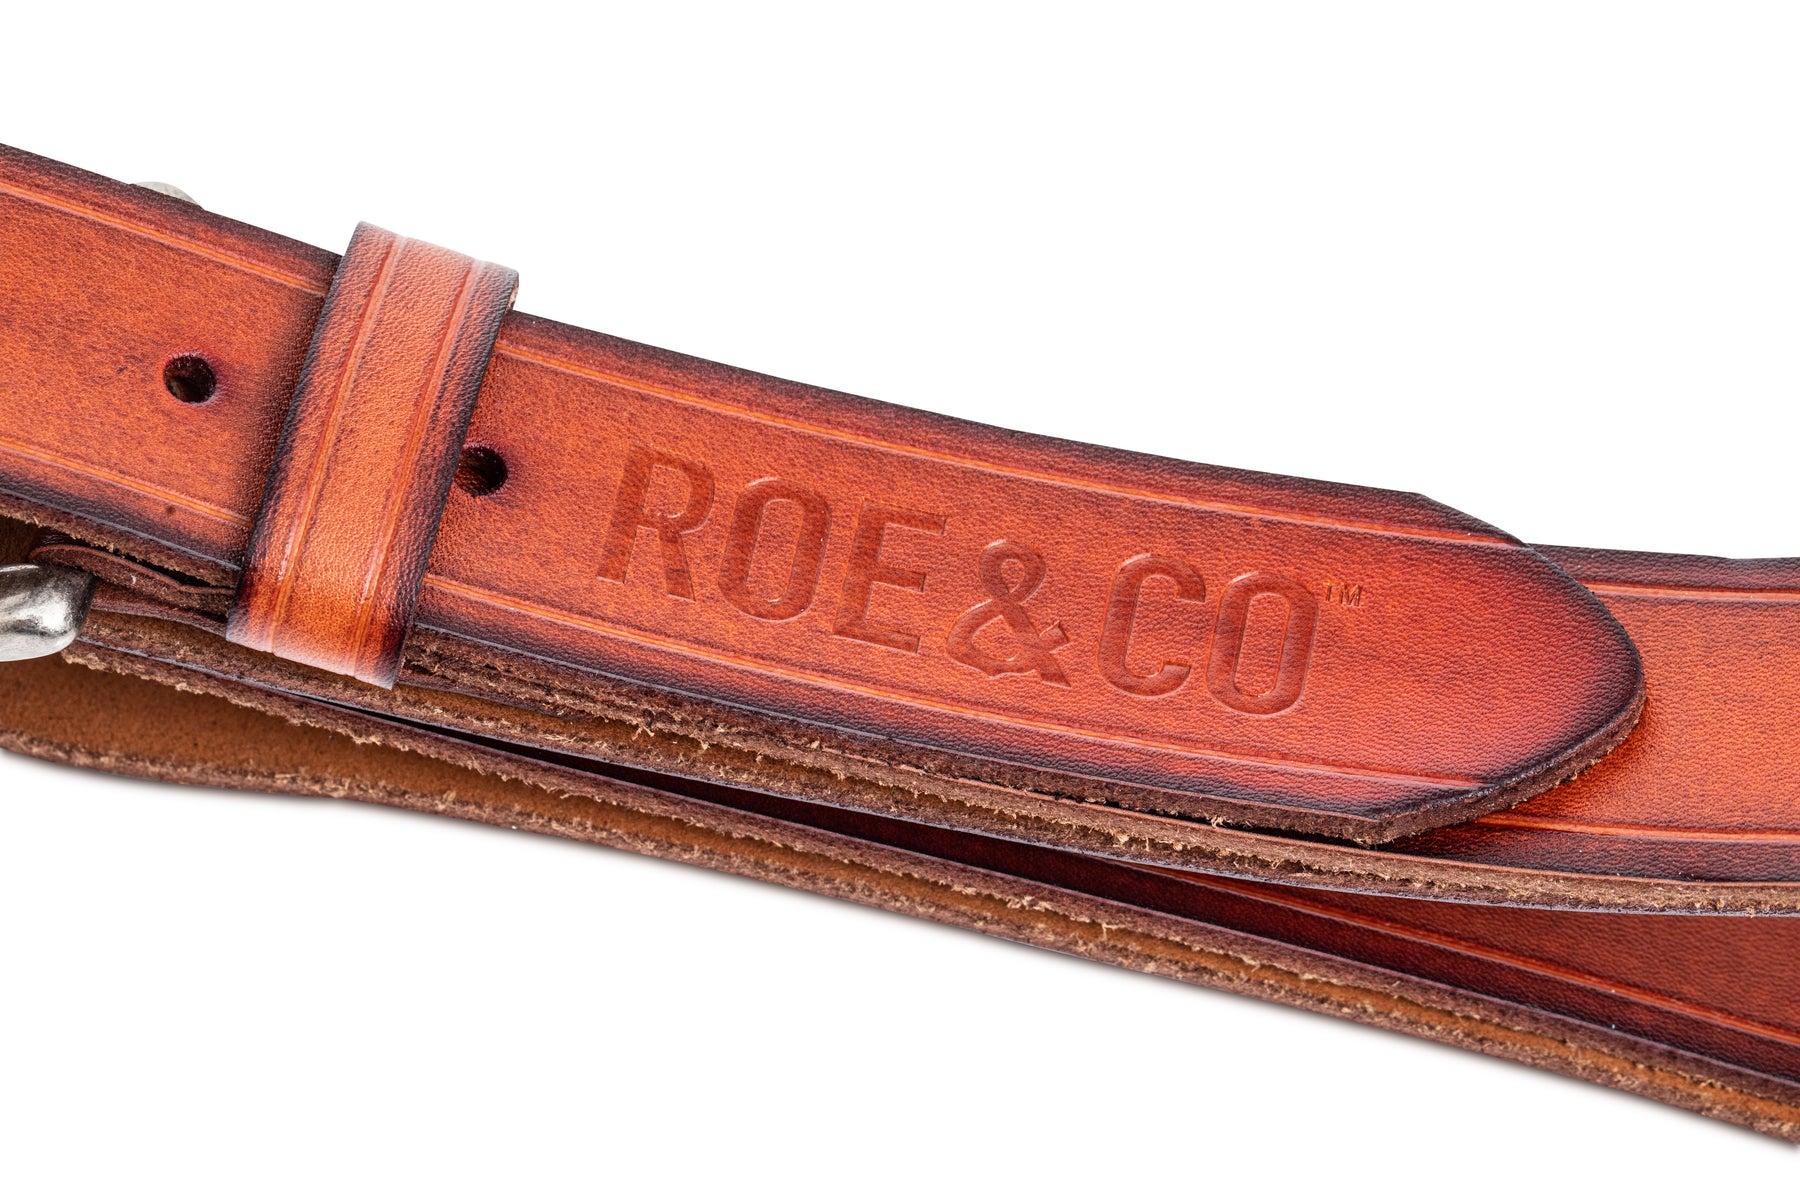 Roe & Co Irish Whiskey Leather Belt